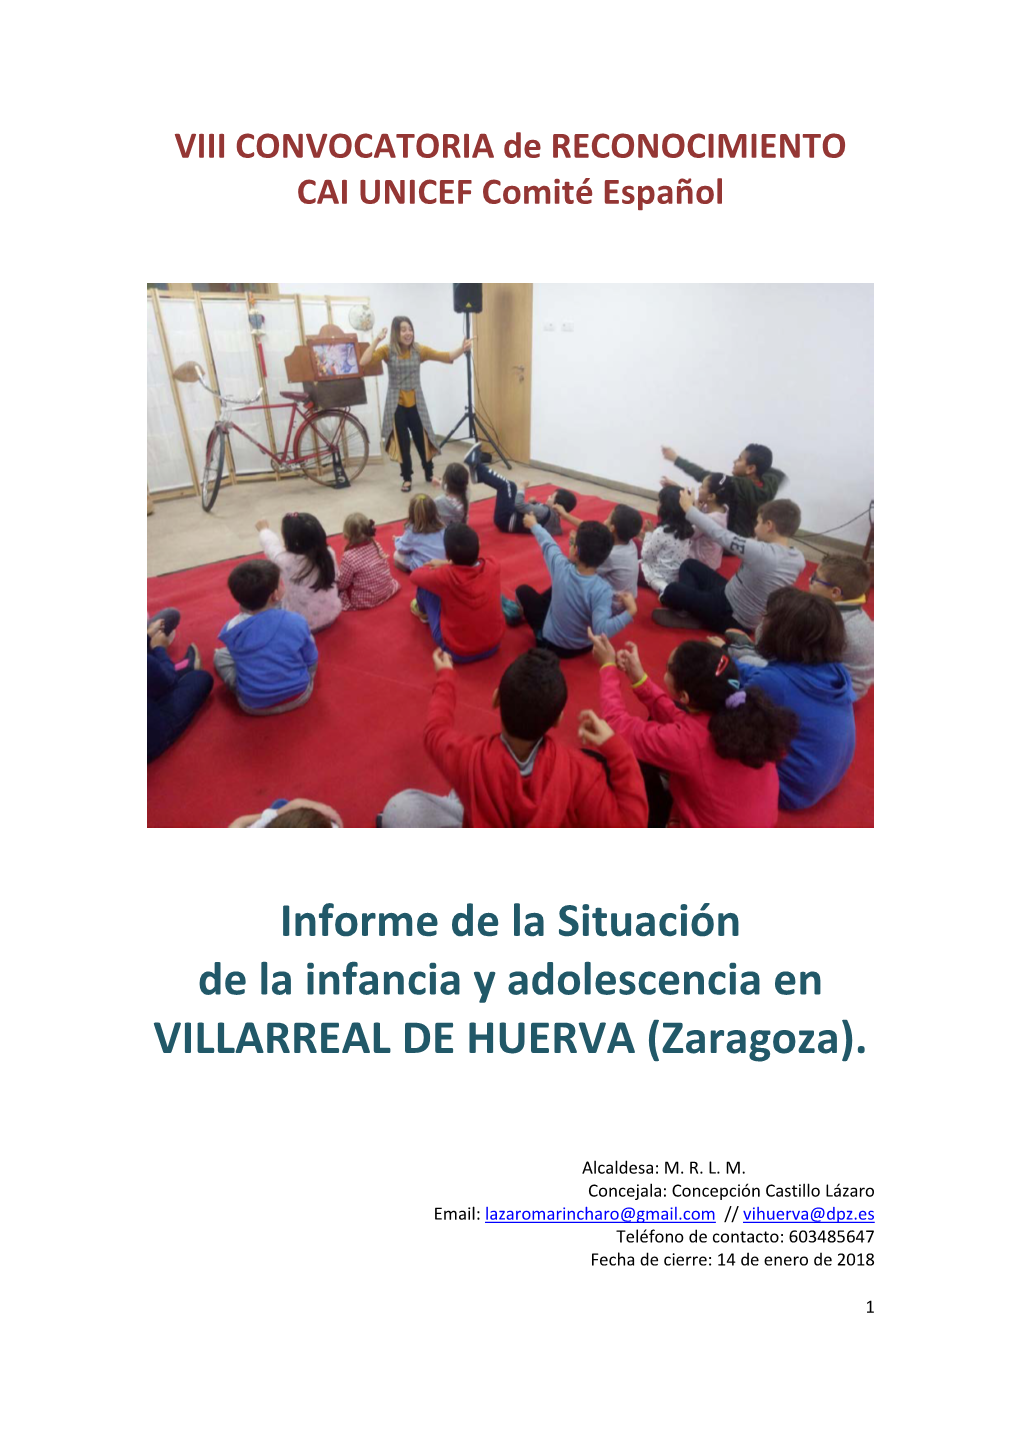 Informe De La Situación De La Infancia Y Adolescencia En VILLARREAL DE HUERVA (Zaragoza)